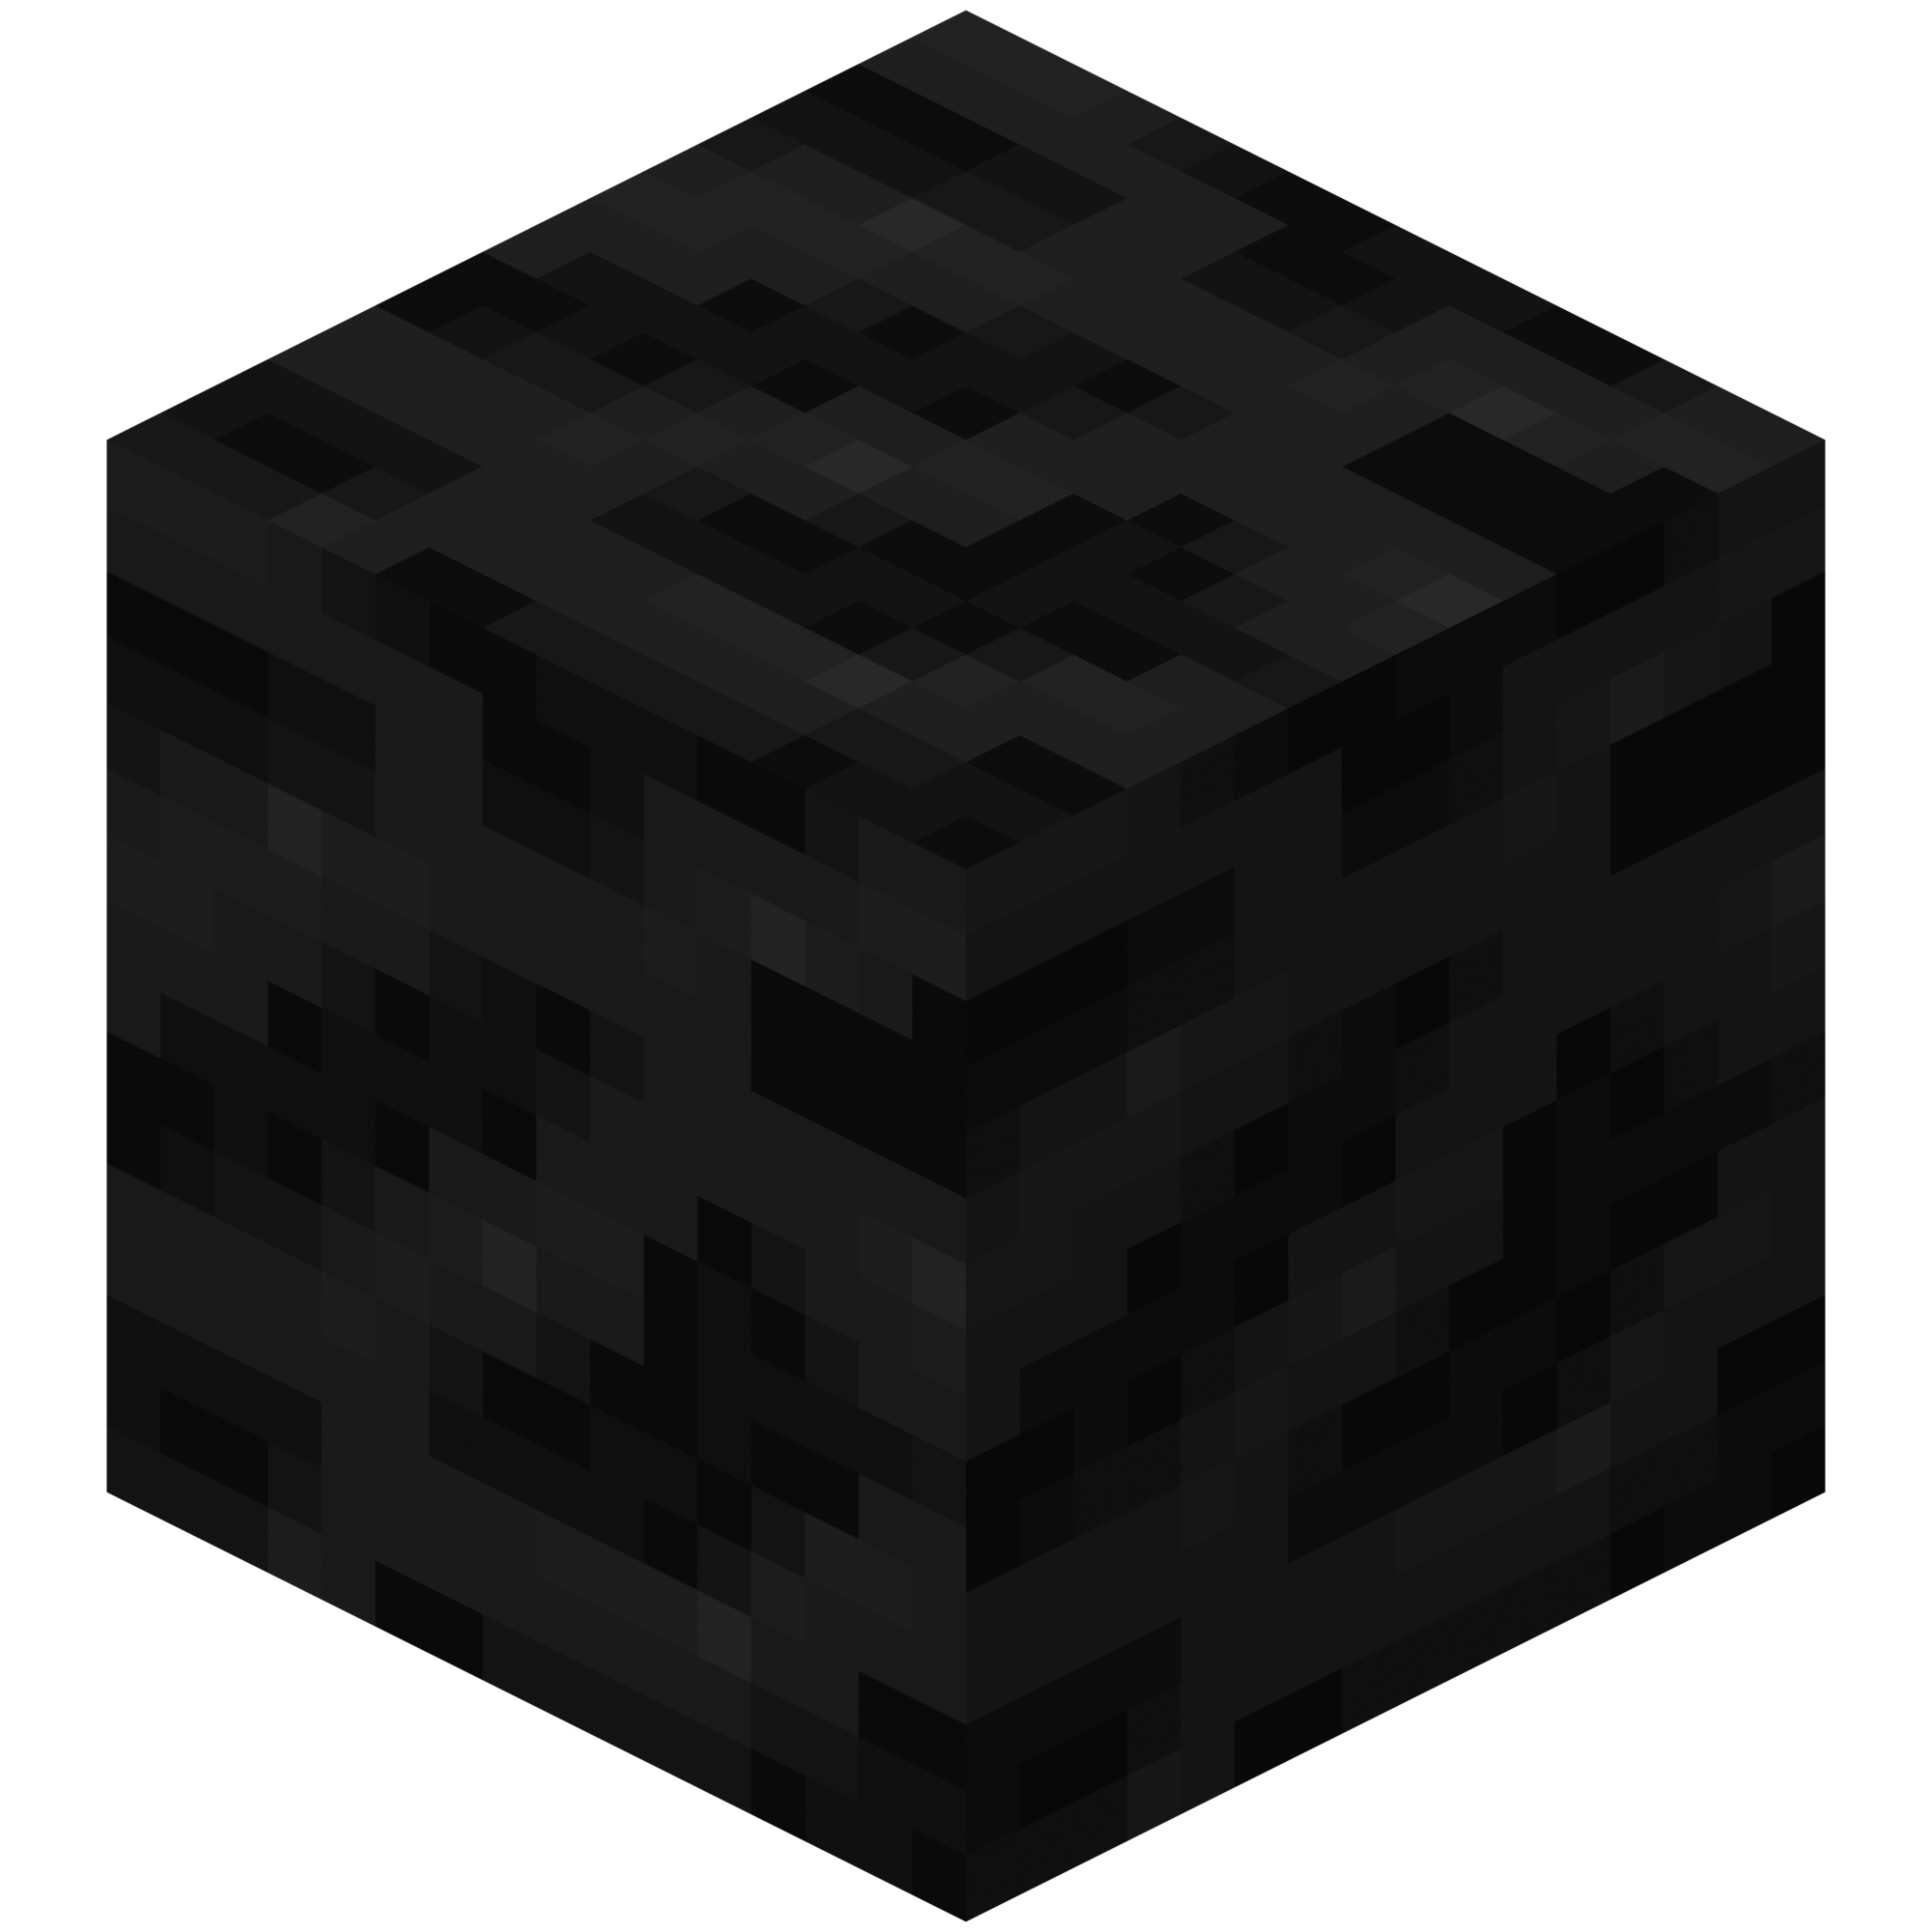 coal block